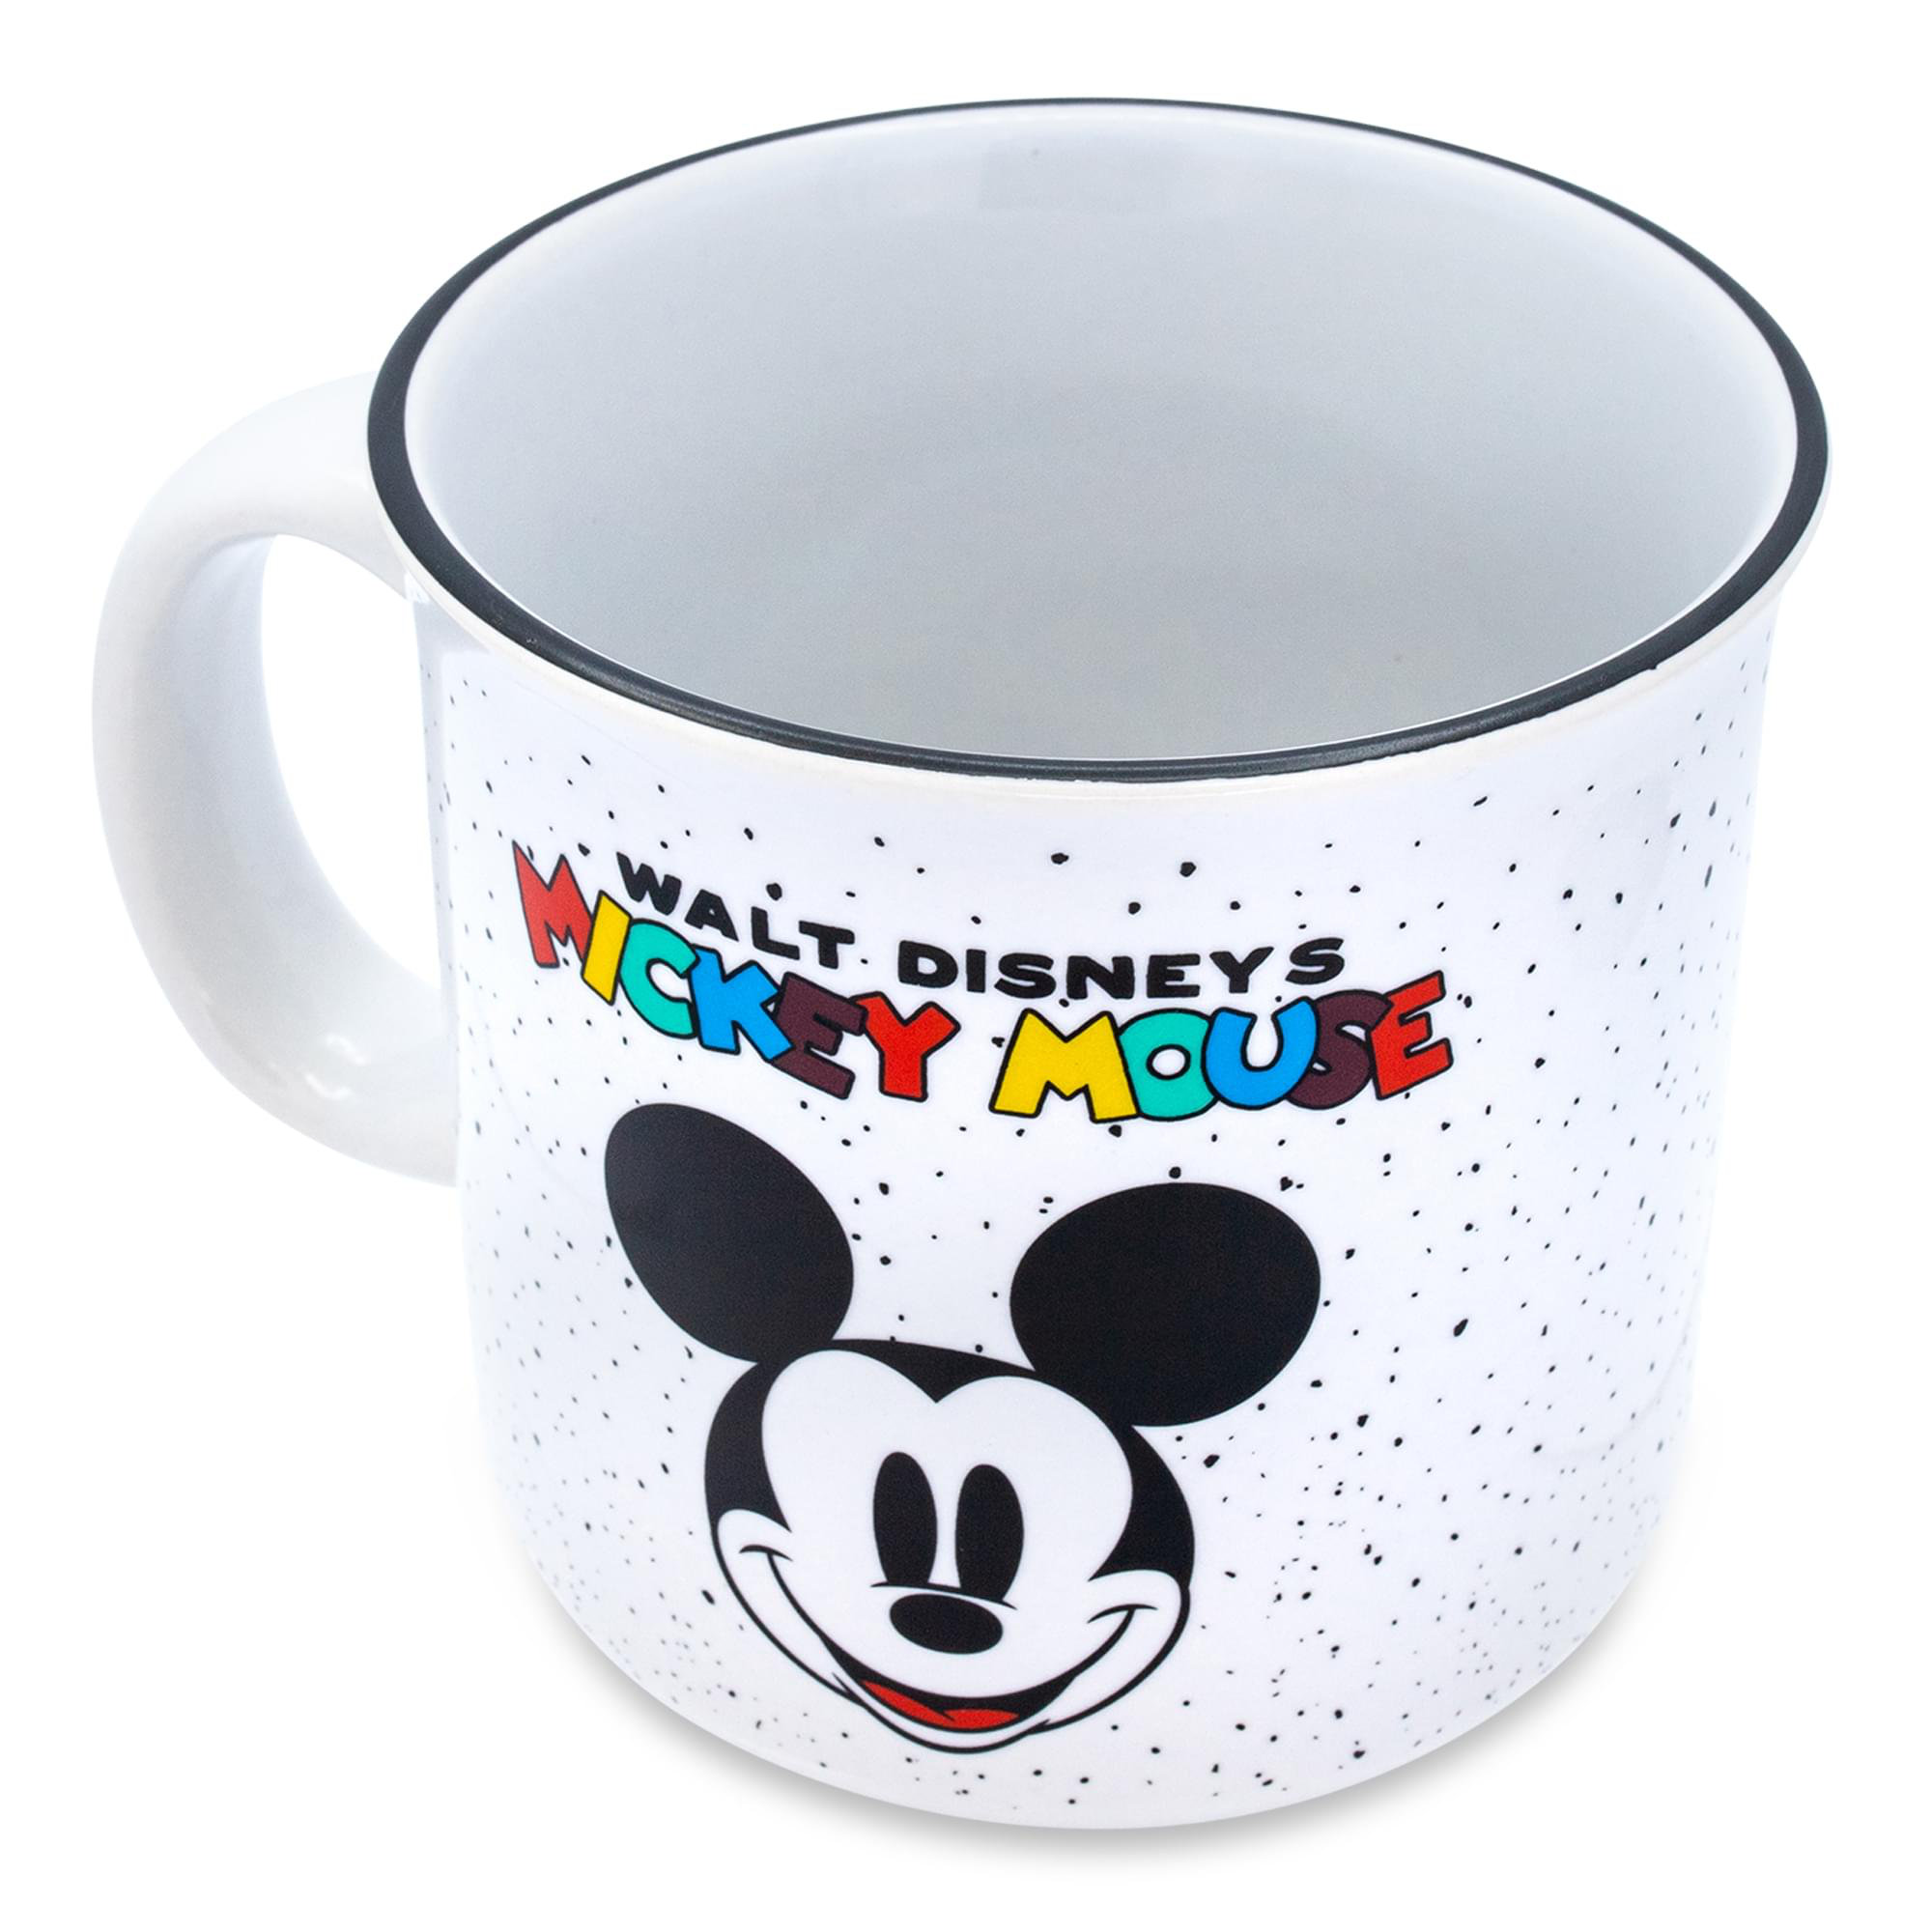 Morphing Mugs Disney 90 Years of Mickey Anniversary Thomas Kinkade Morphing  Mugs Heat-Changing Drinkware - 11oz